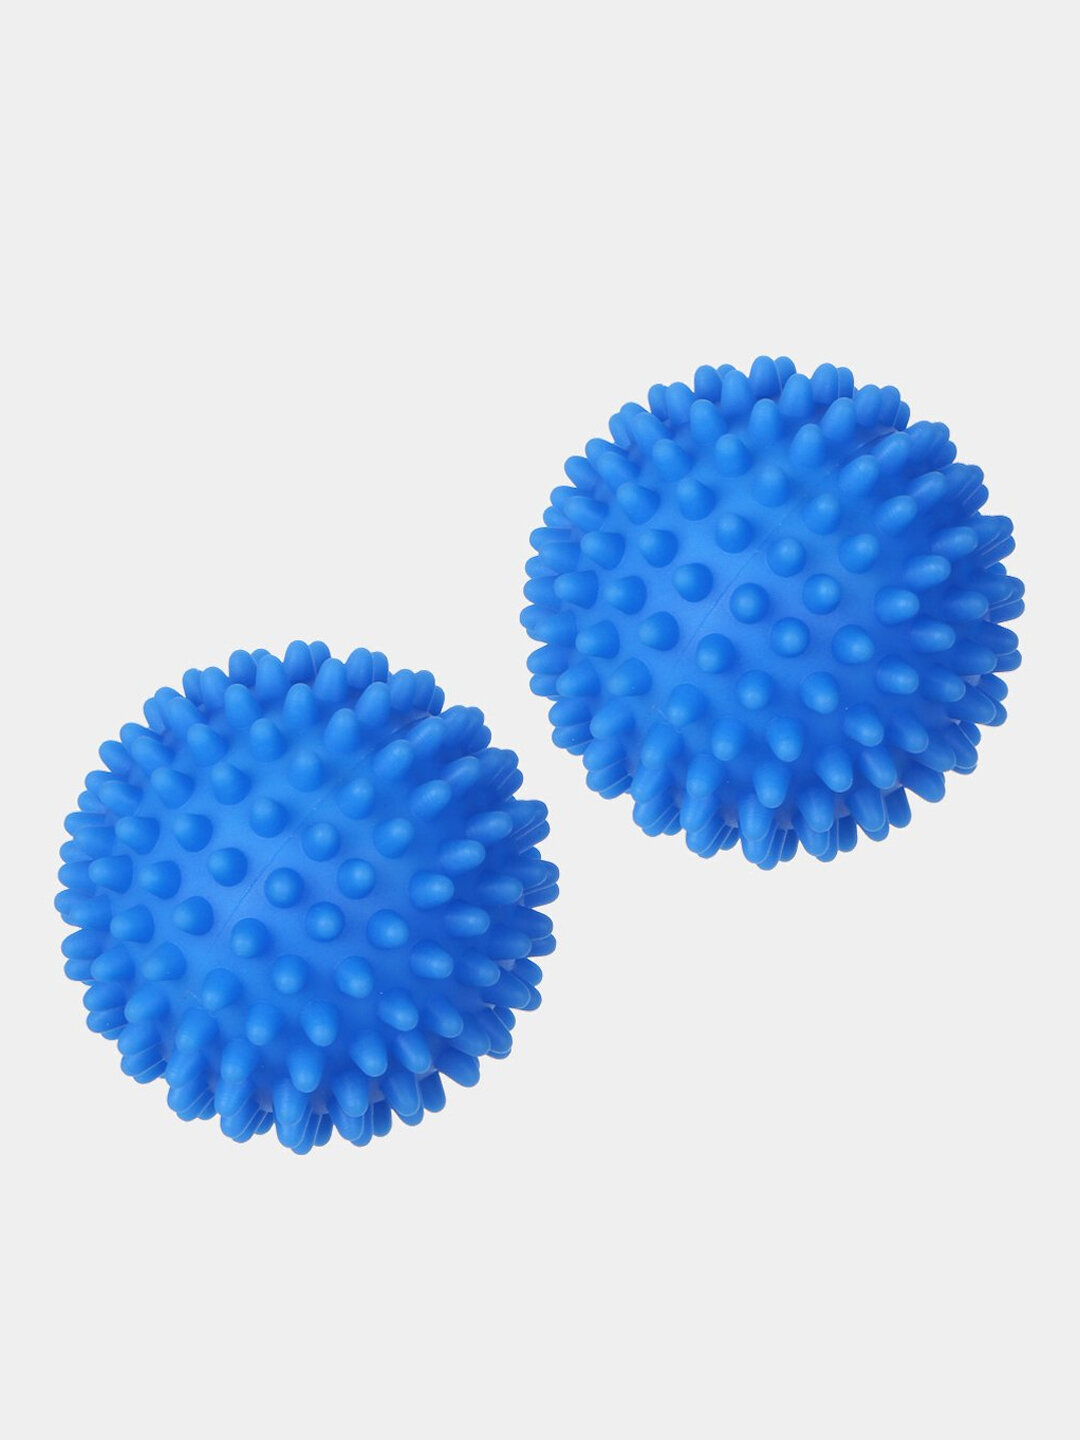 Набор мячей для стирки и сушки белья, 2 штуки, диаметр 6,5 см